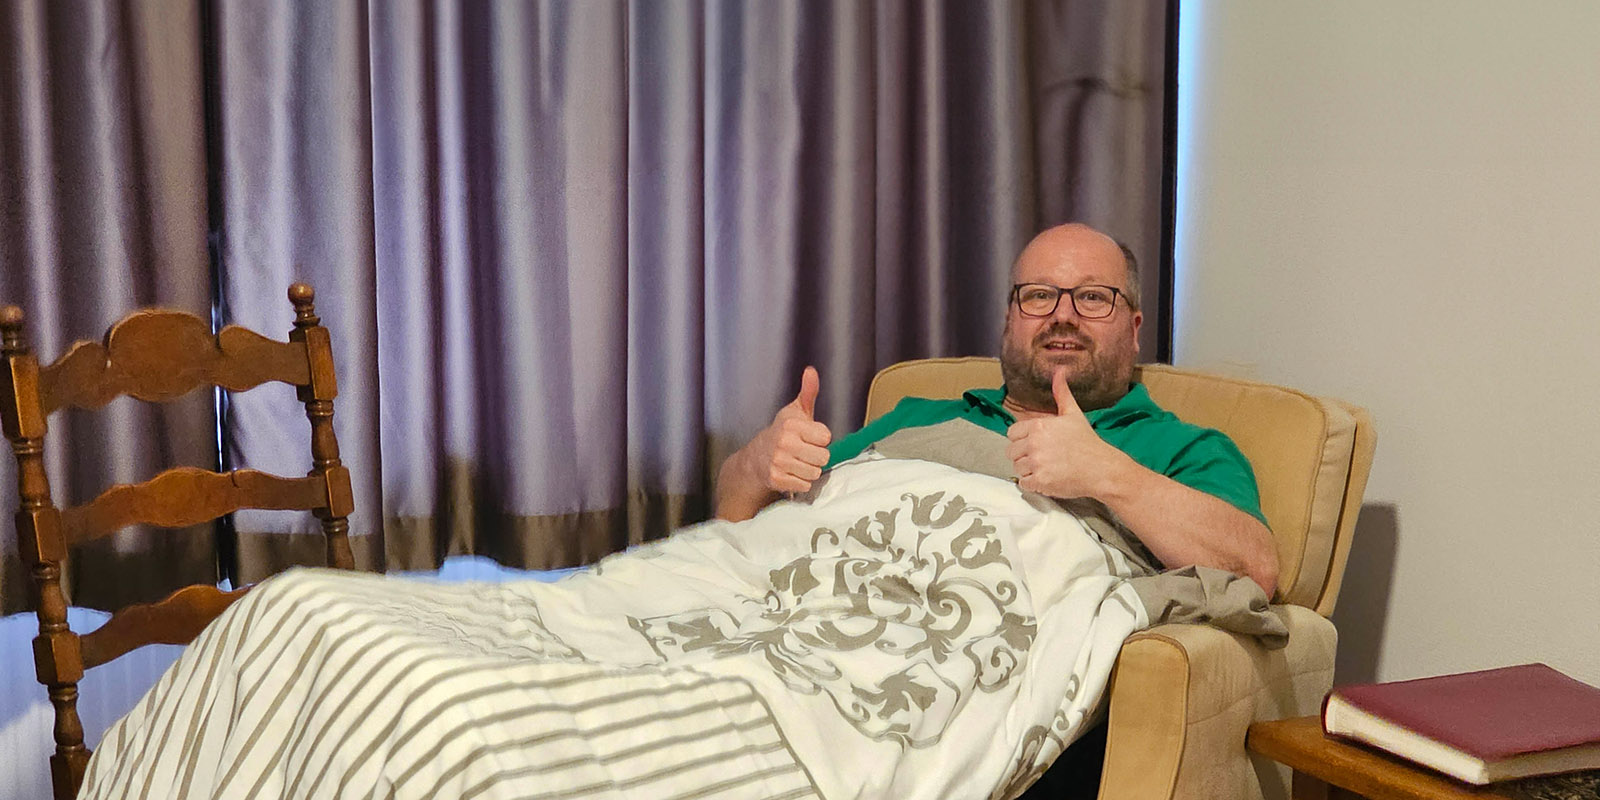 Belevingsgerichte zorg: Pieter ligt op de stoel in de studio van een bewoner met dementie, die niet alleen durft te slapen.